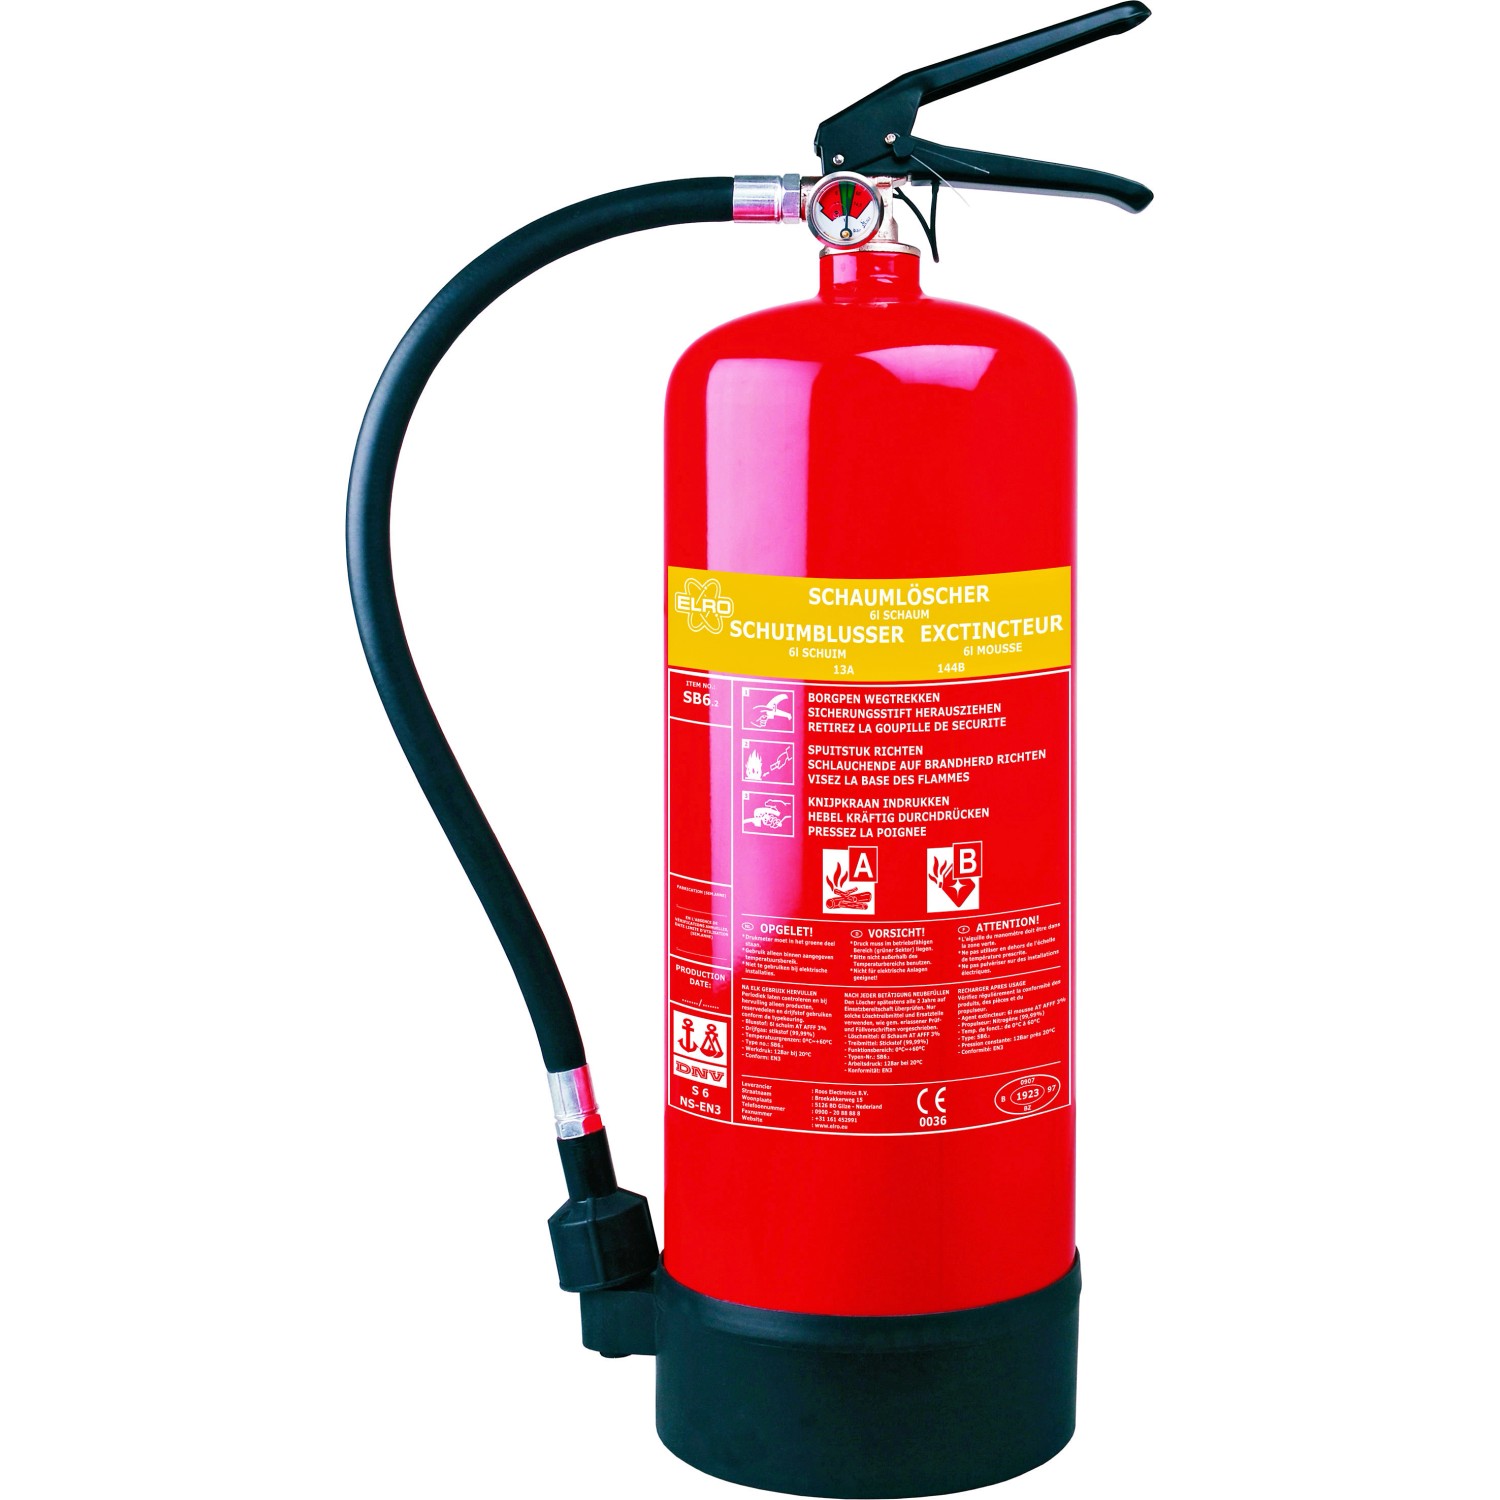 Schaumlöscher 6kg - Der Schaumfeuerlöscher ist der Feuerlöscher fürs Büro -  Vorteile & Anleitung 